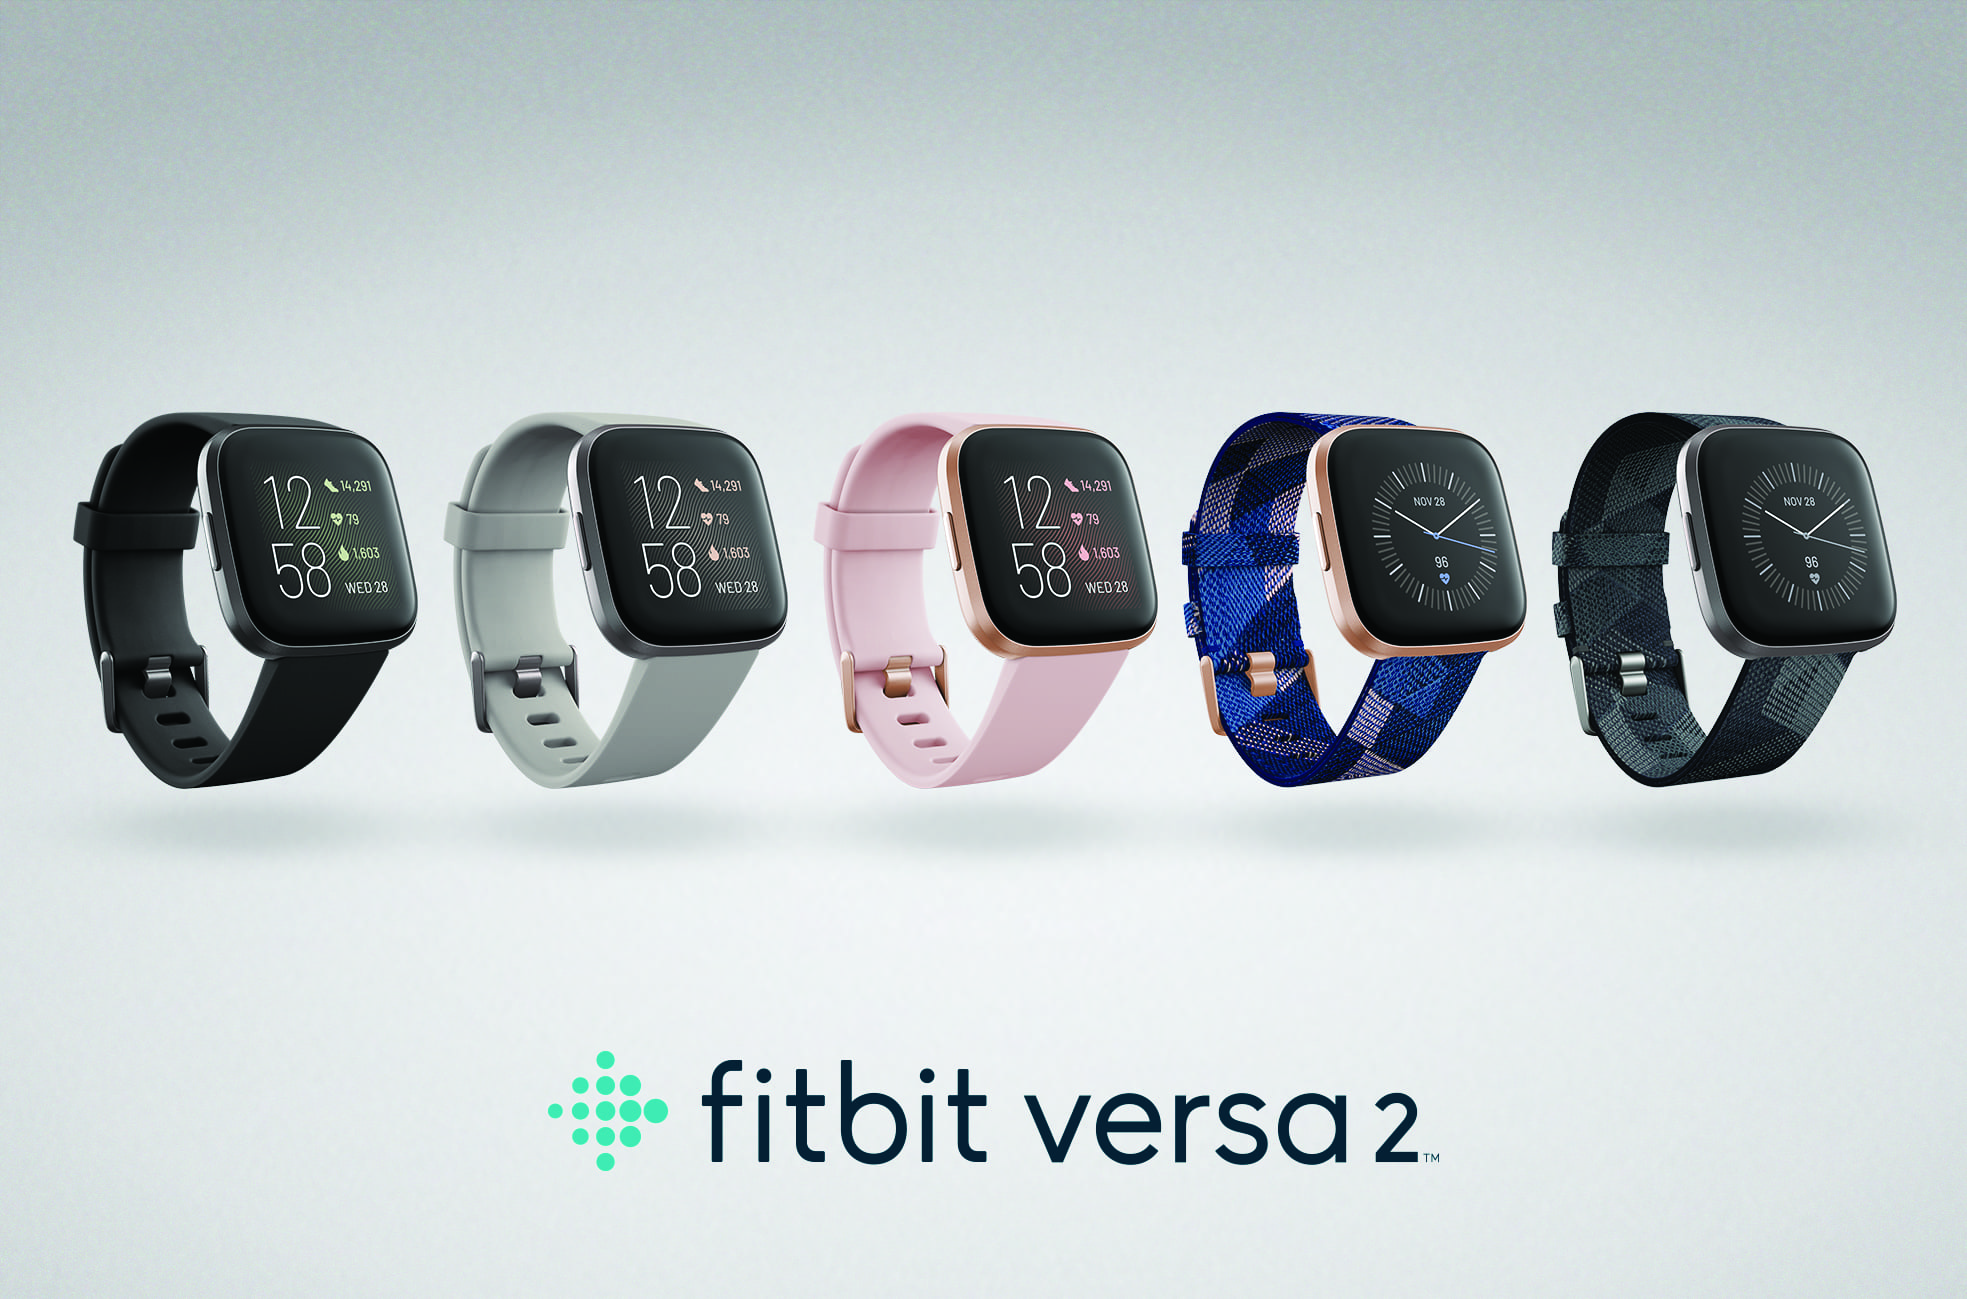 Fitbit prezintă Versa 2, noul smartwatch premium vine cu opțiune de răspuns vocal la mesajele text, vezi video